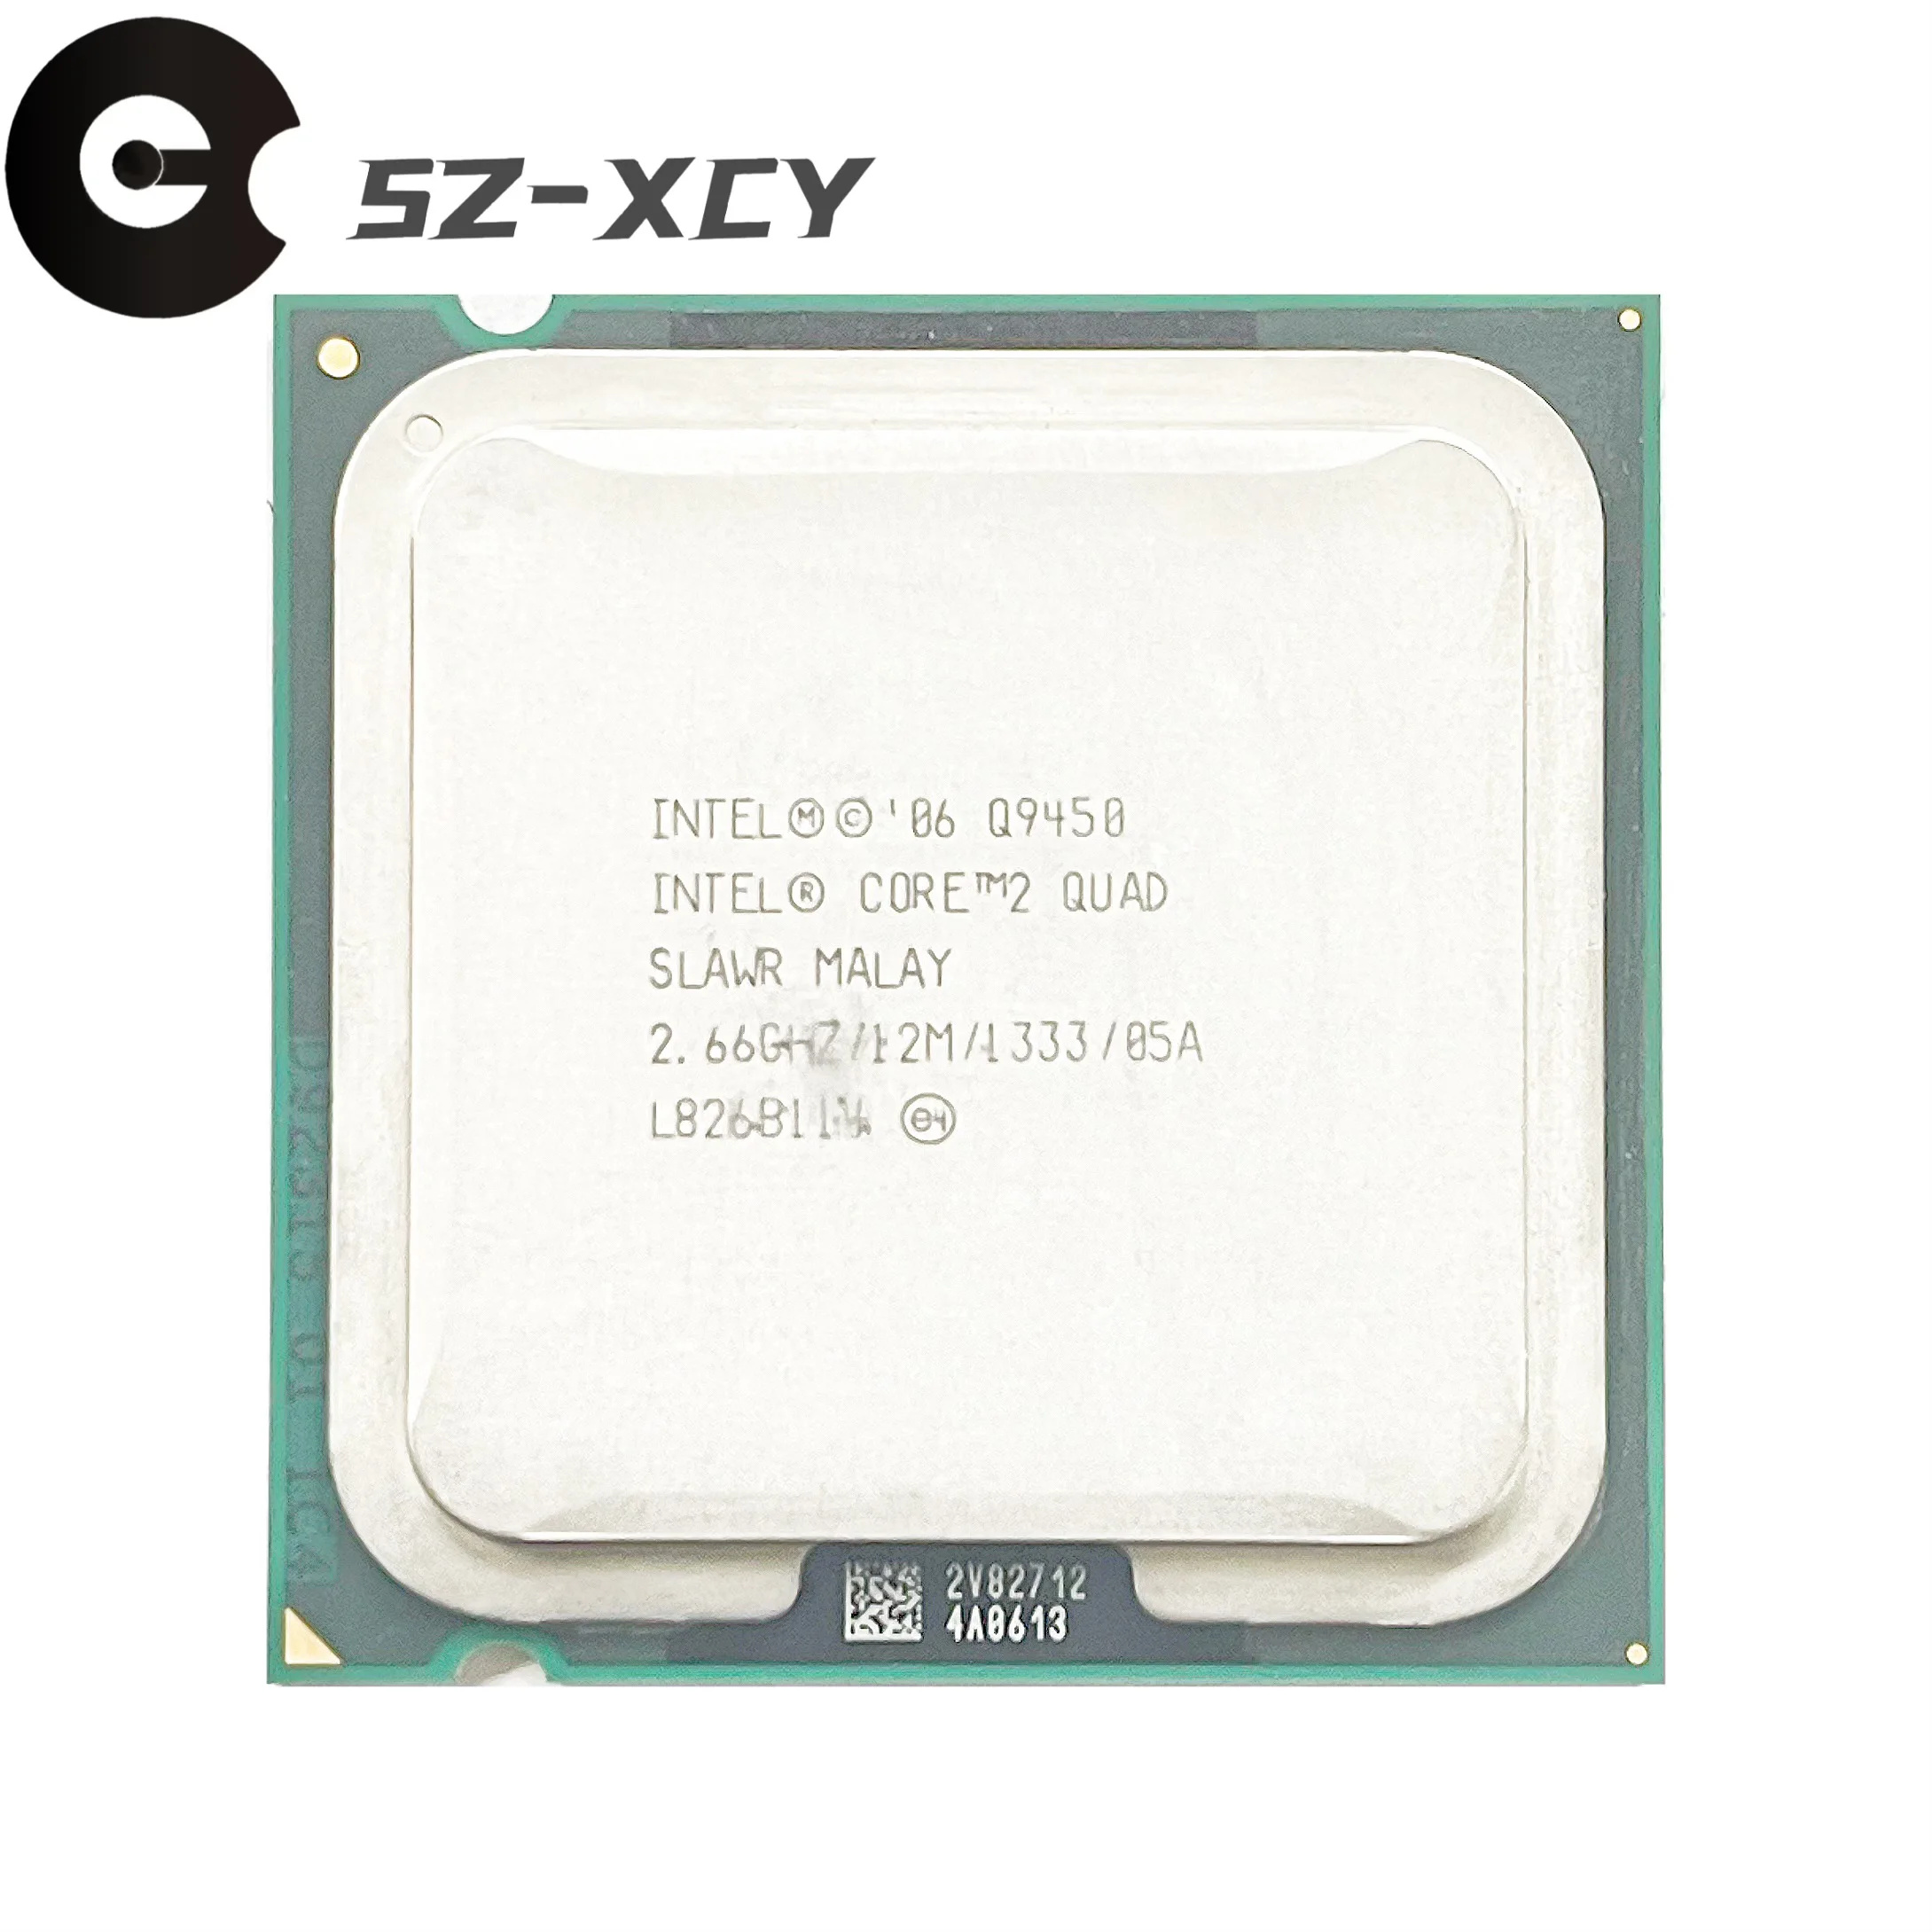 Четырехъядерный процессор Intel Core 2 Quad Q9450 с частотой 2,6 ГГц, процессор 12M 95W LGA 775 0